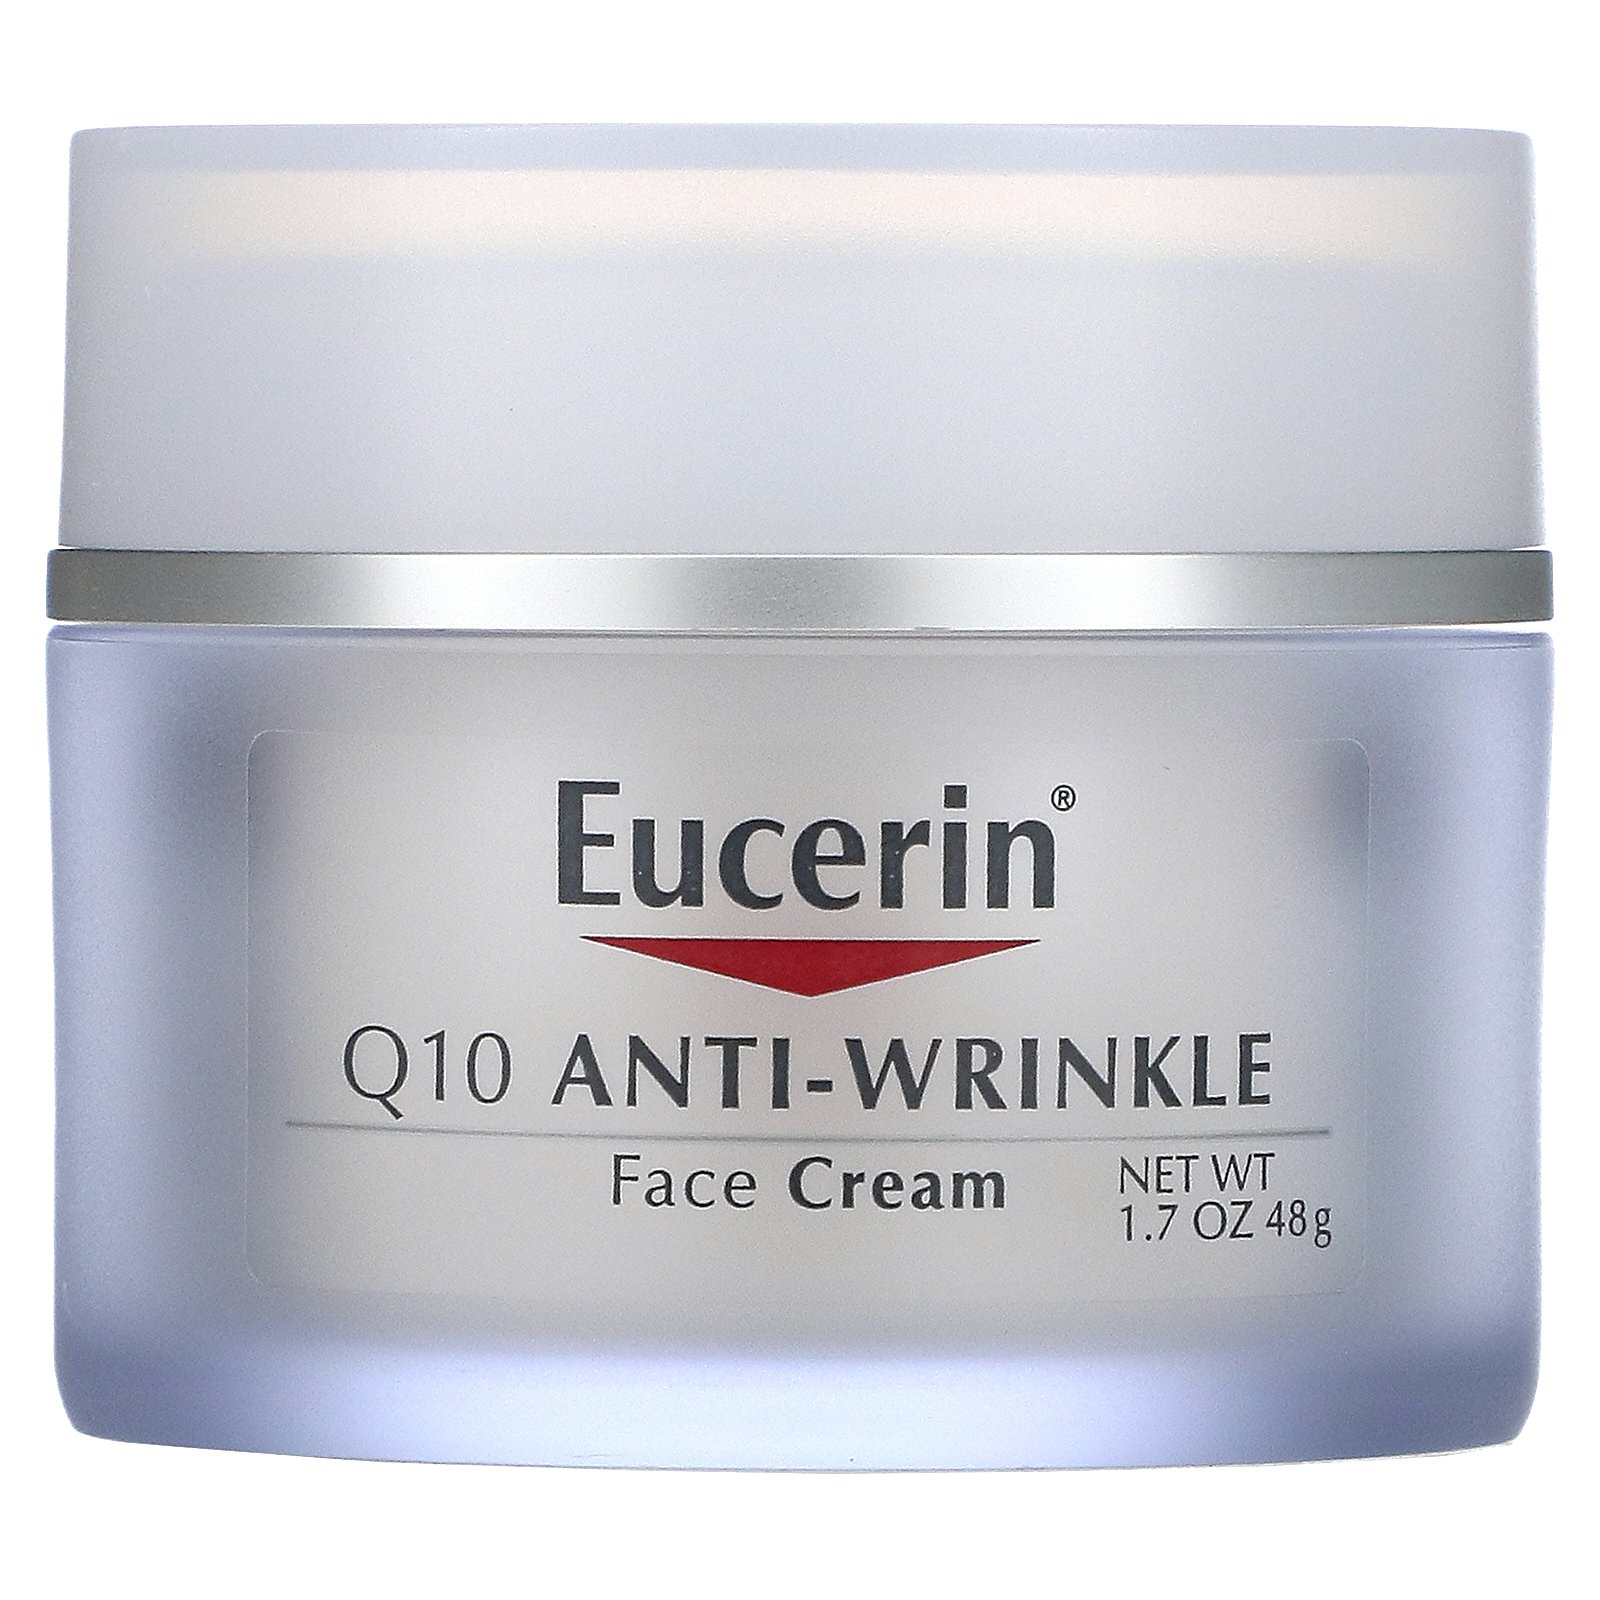 eucerin anti wrinkle night cream review